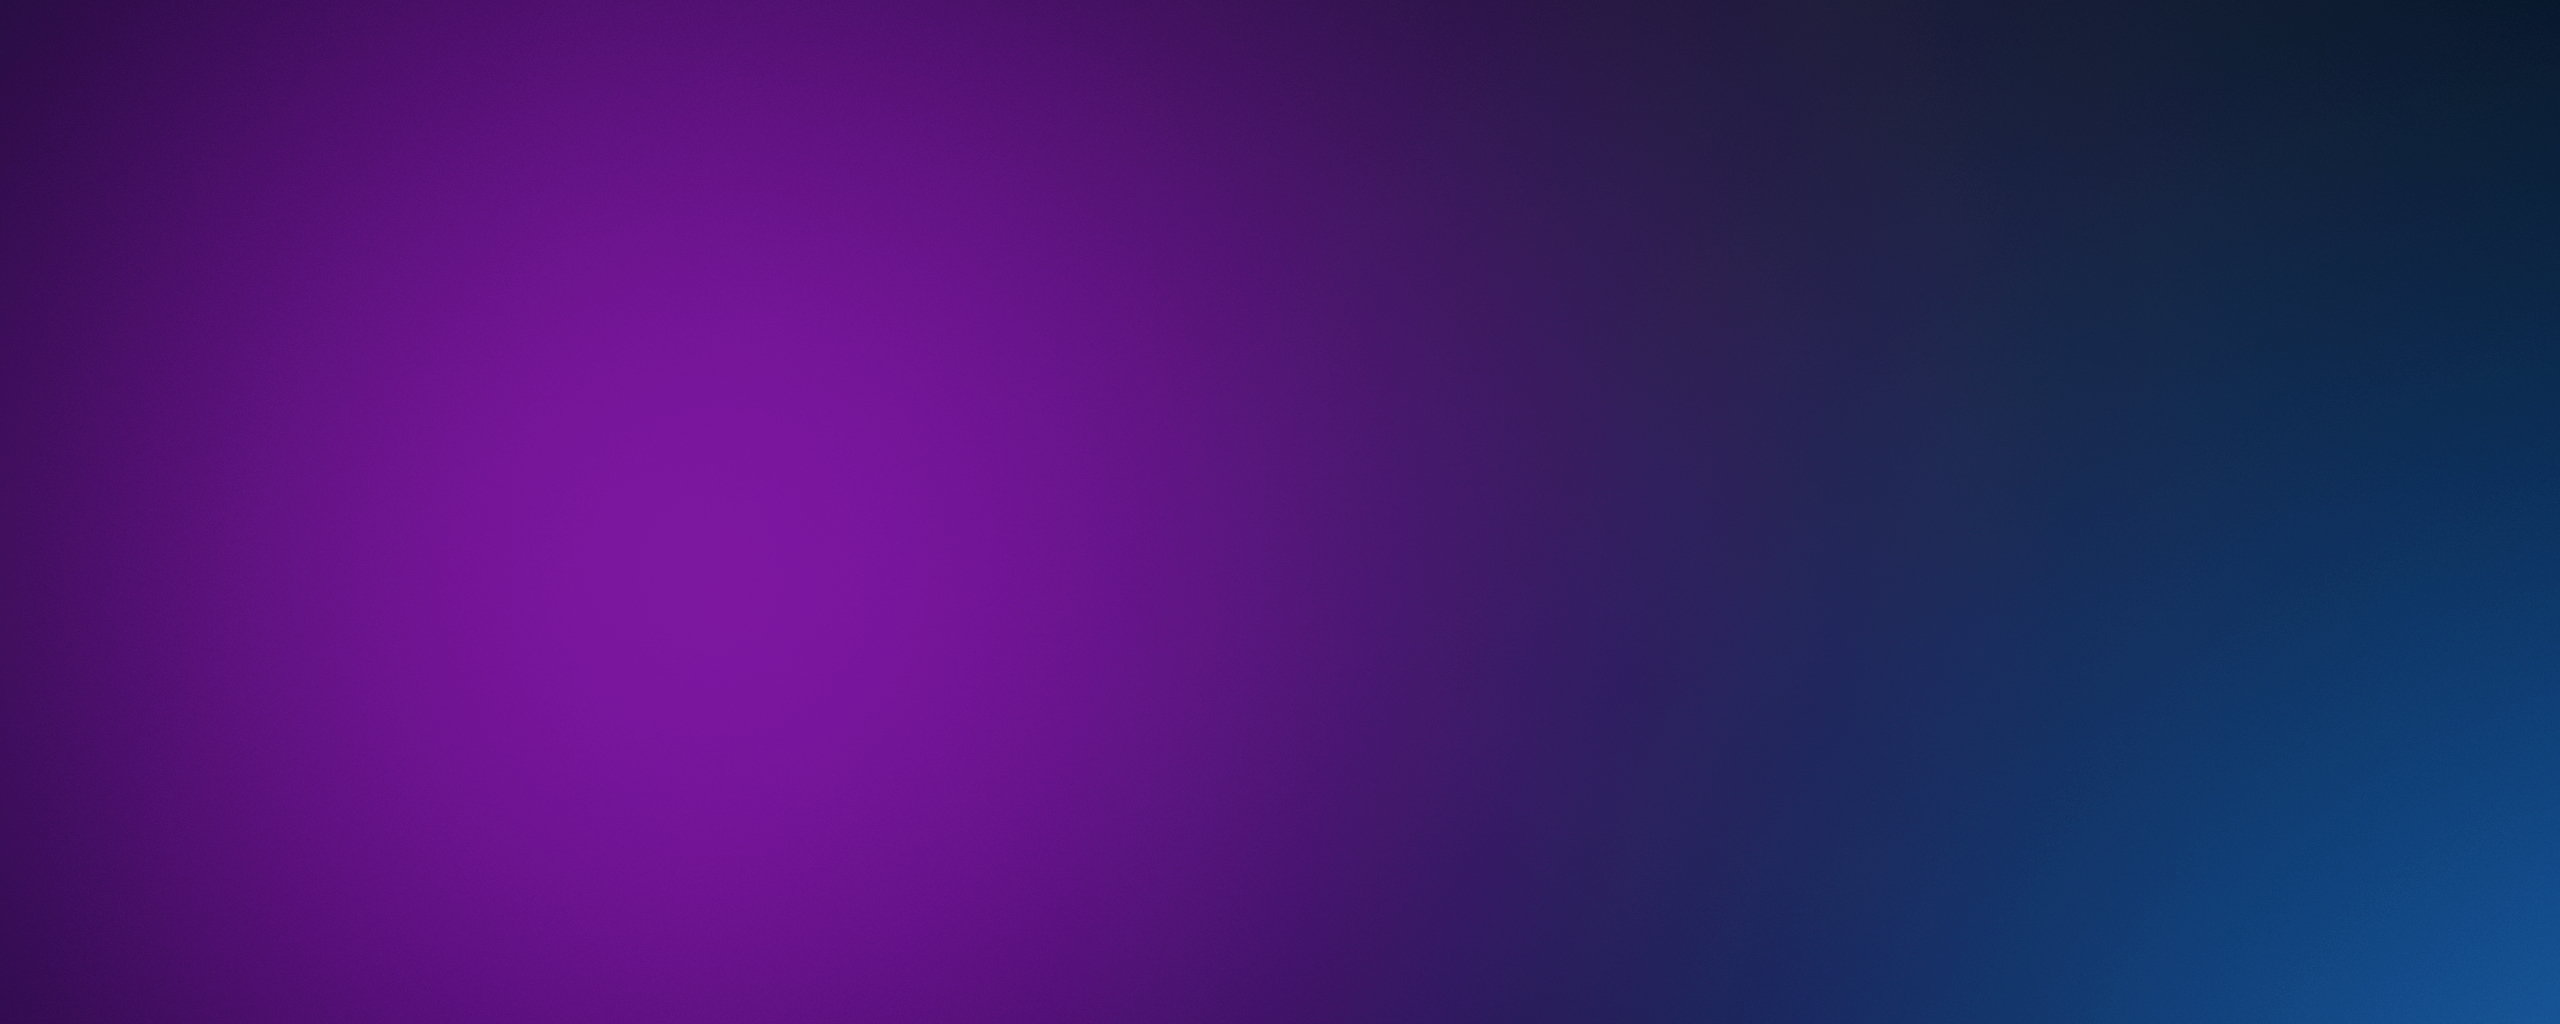 Purple Blur, Full HD 2K Wallpaper